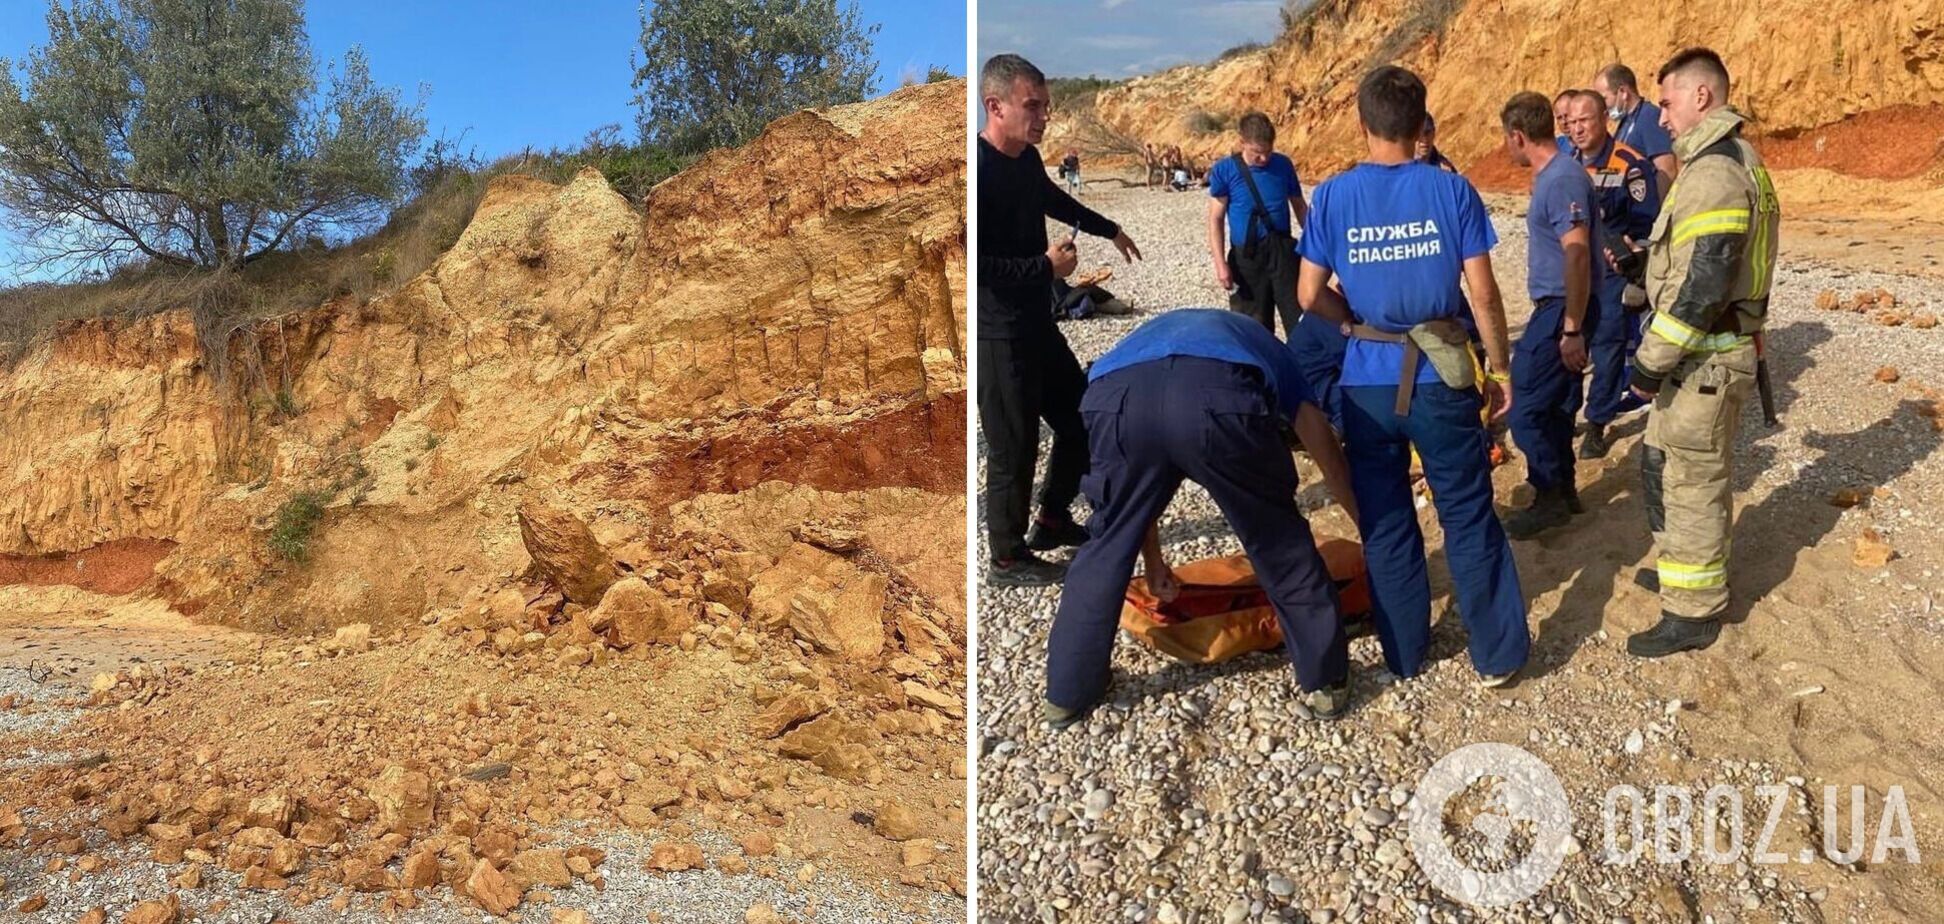 У Криму трапився обвал ґрунту на пляжі, двоє постраждалих у важкому стані